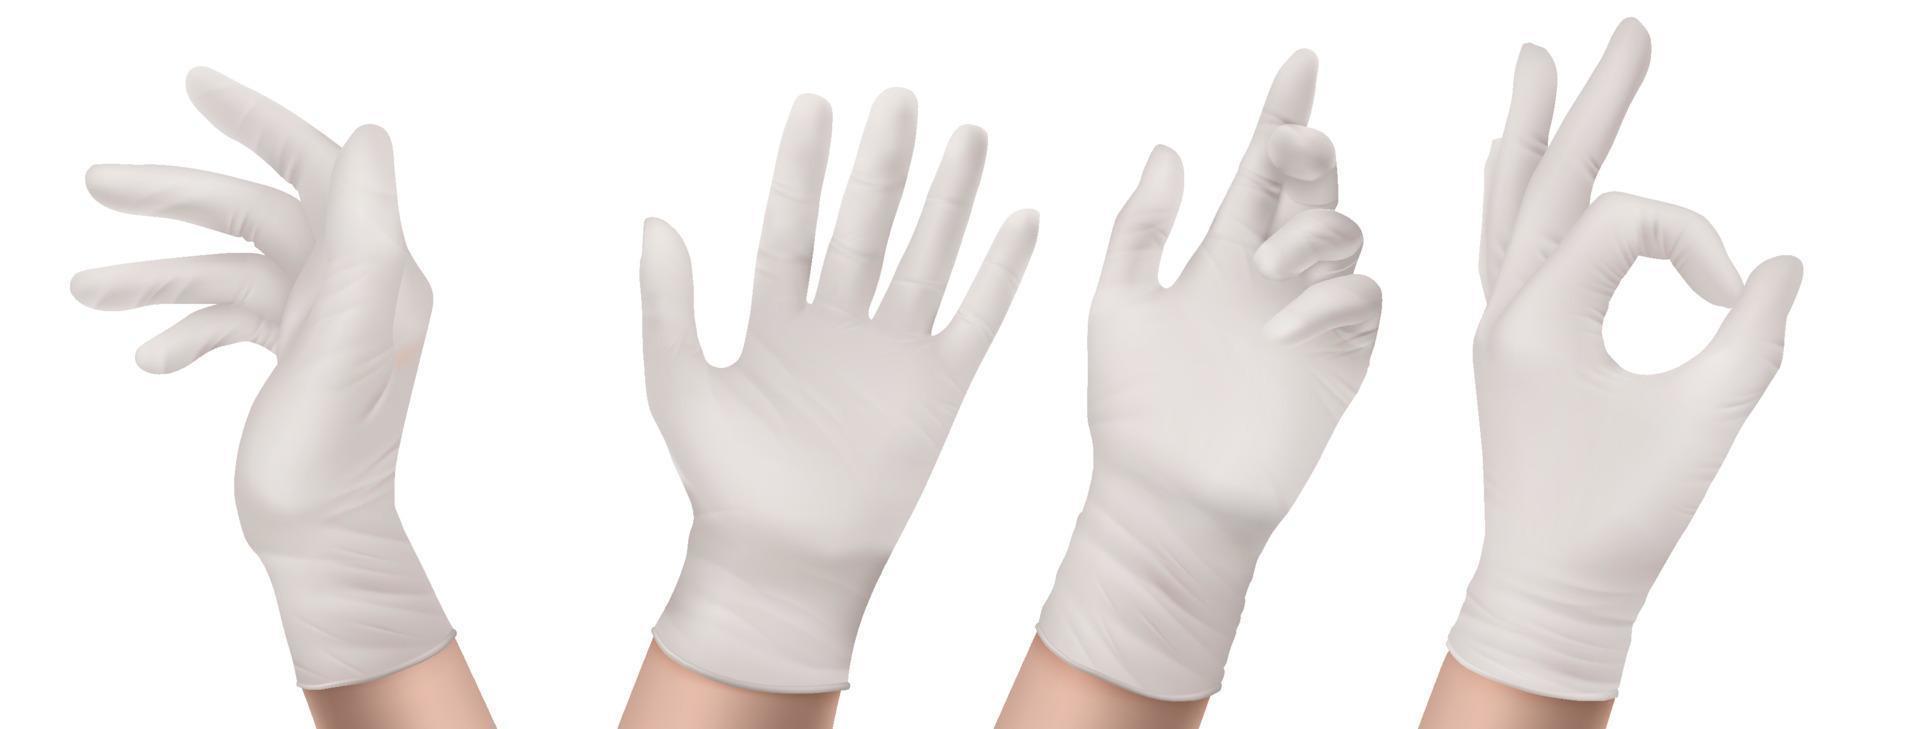 Nitril-Handschuhe an Handfront oder seitlich isoliertem Set vektor